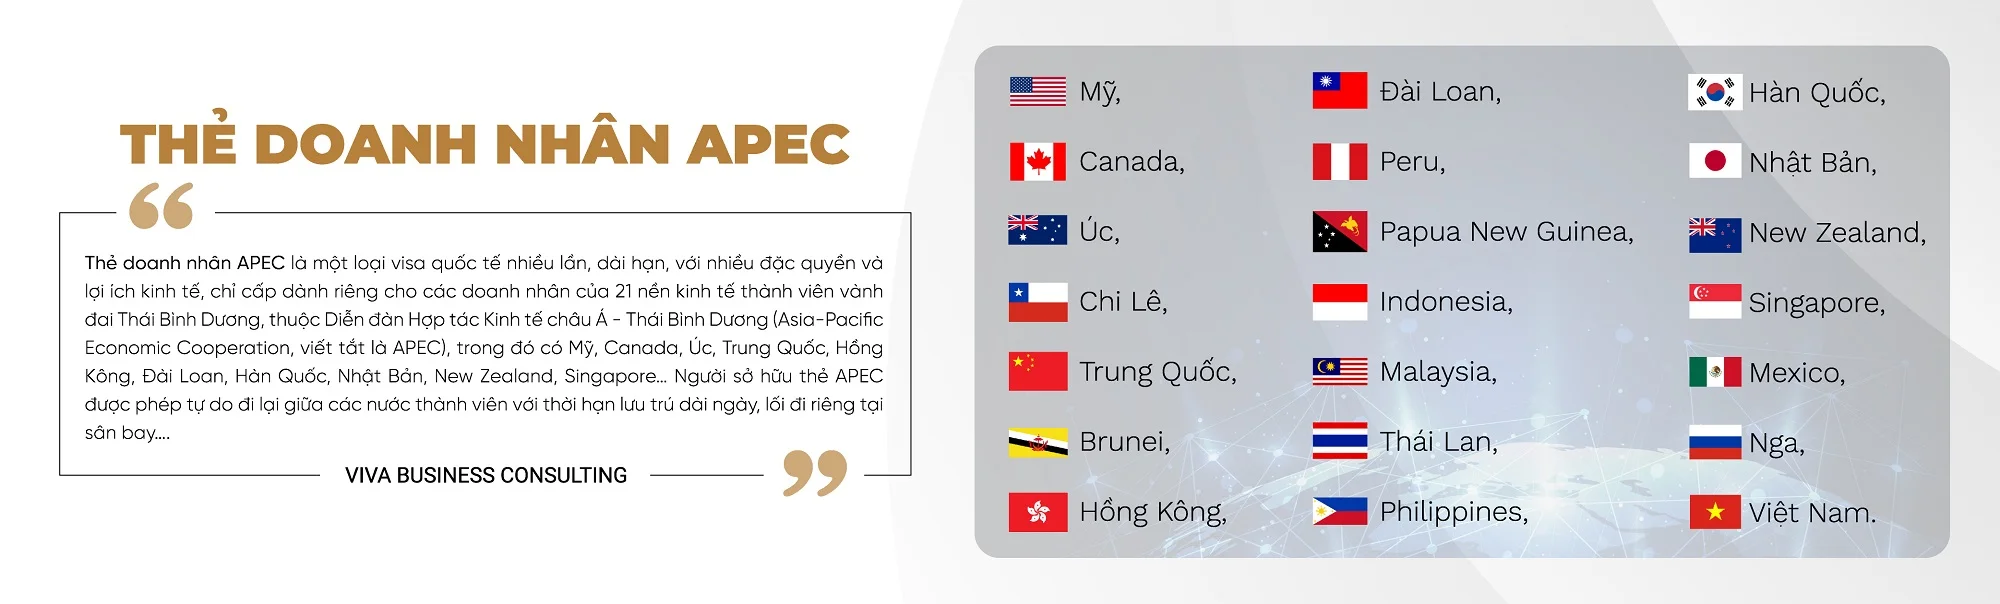 Thẻ doanh nhân APEC 19 quốc gia